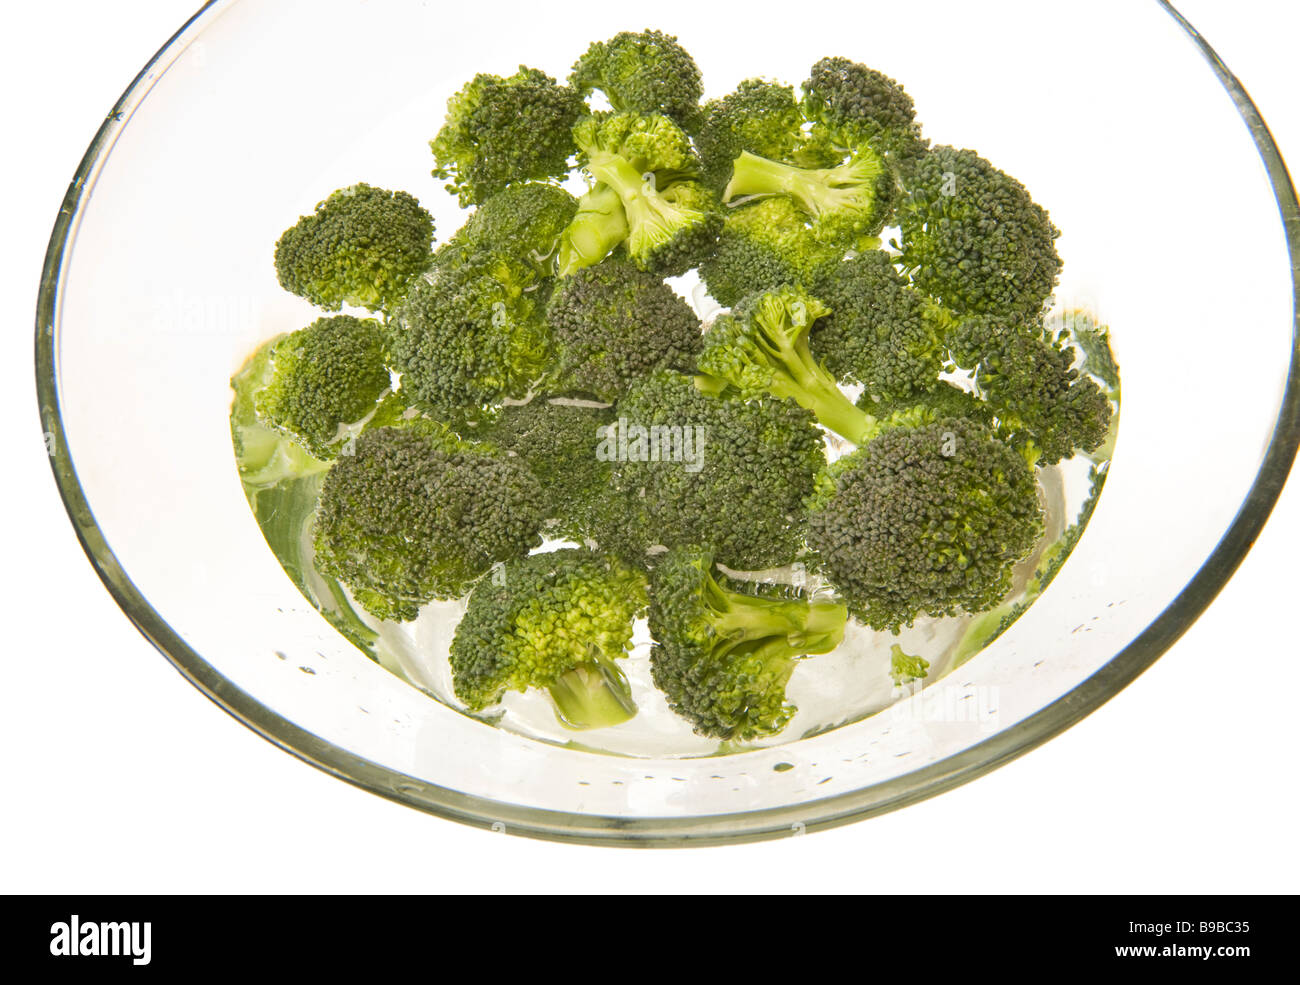 Brokkoli brokoli broccoletti in acqua ciotola di vetro waterbowl cucina pulire pulizia lavare lavaggio greenfood verde la cottura del cibo Foto Stock